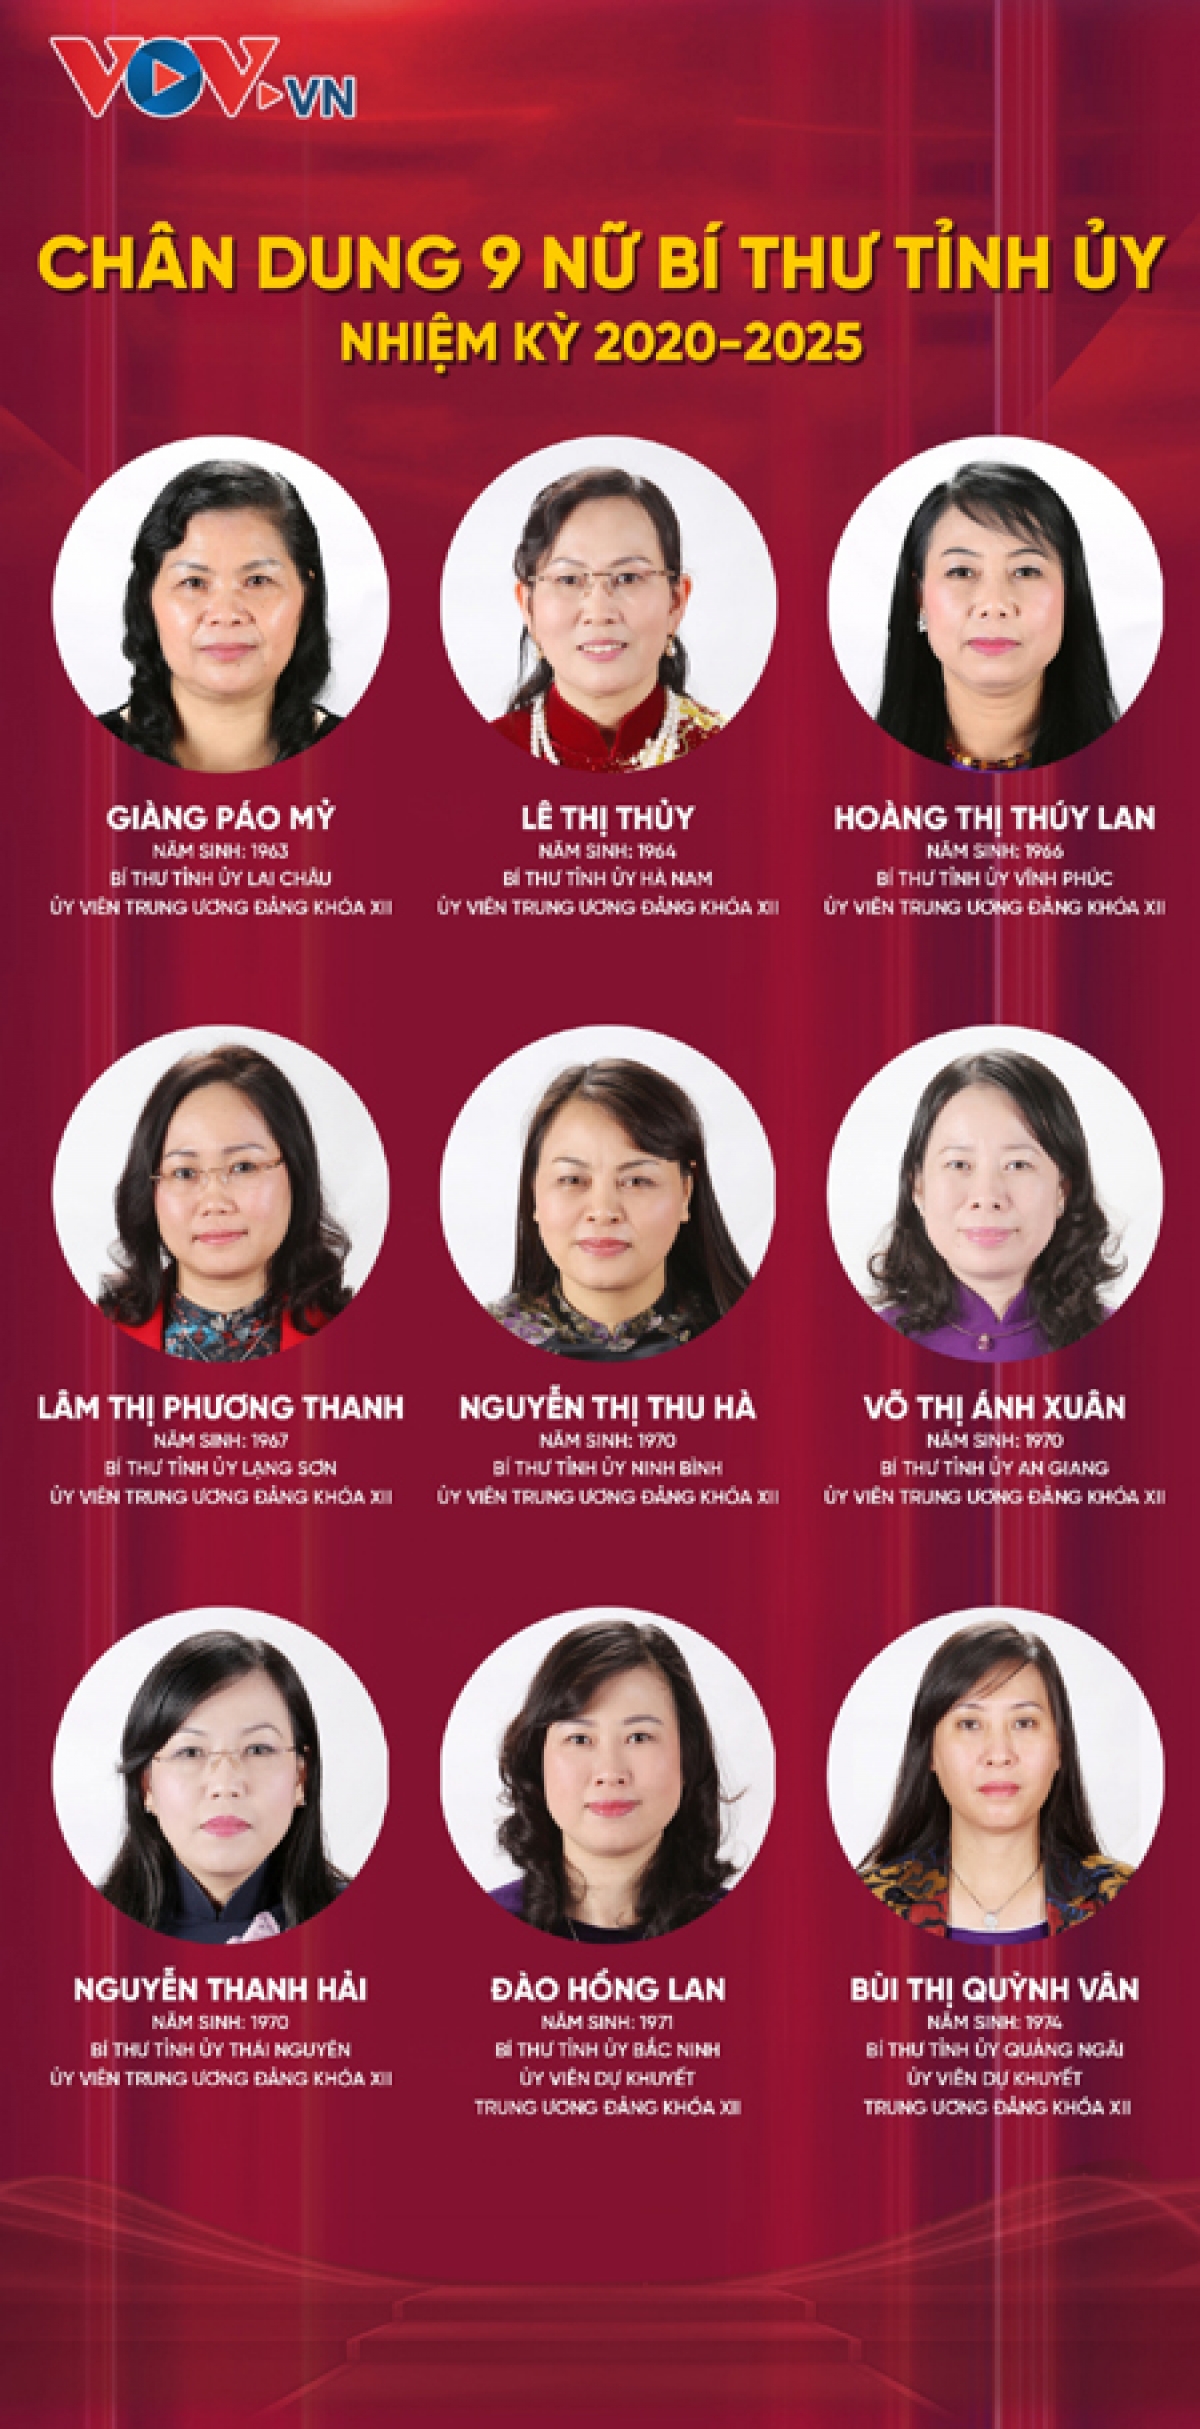 Chân dung 9 nữ Bí thư Tỉnh ủy nhiệm kỳ 2020-2025 (Đồ họa: Quang Huy)